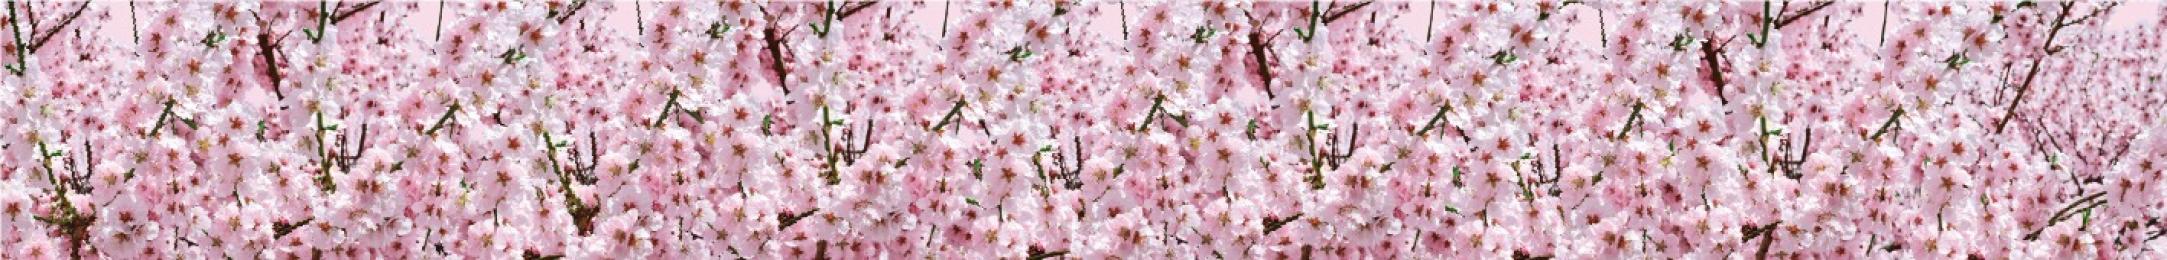 [店舗装飾品] ロール幕桜の商品画像